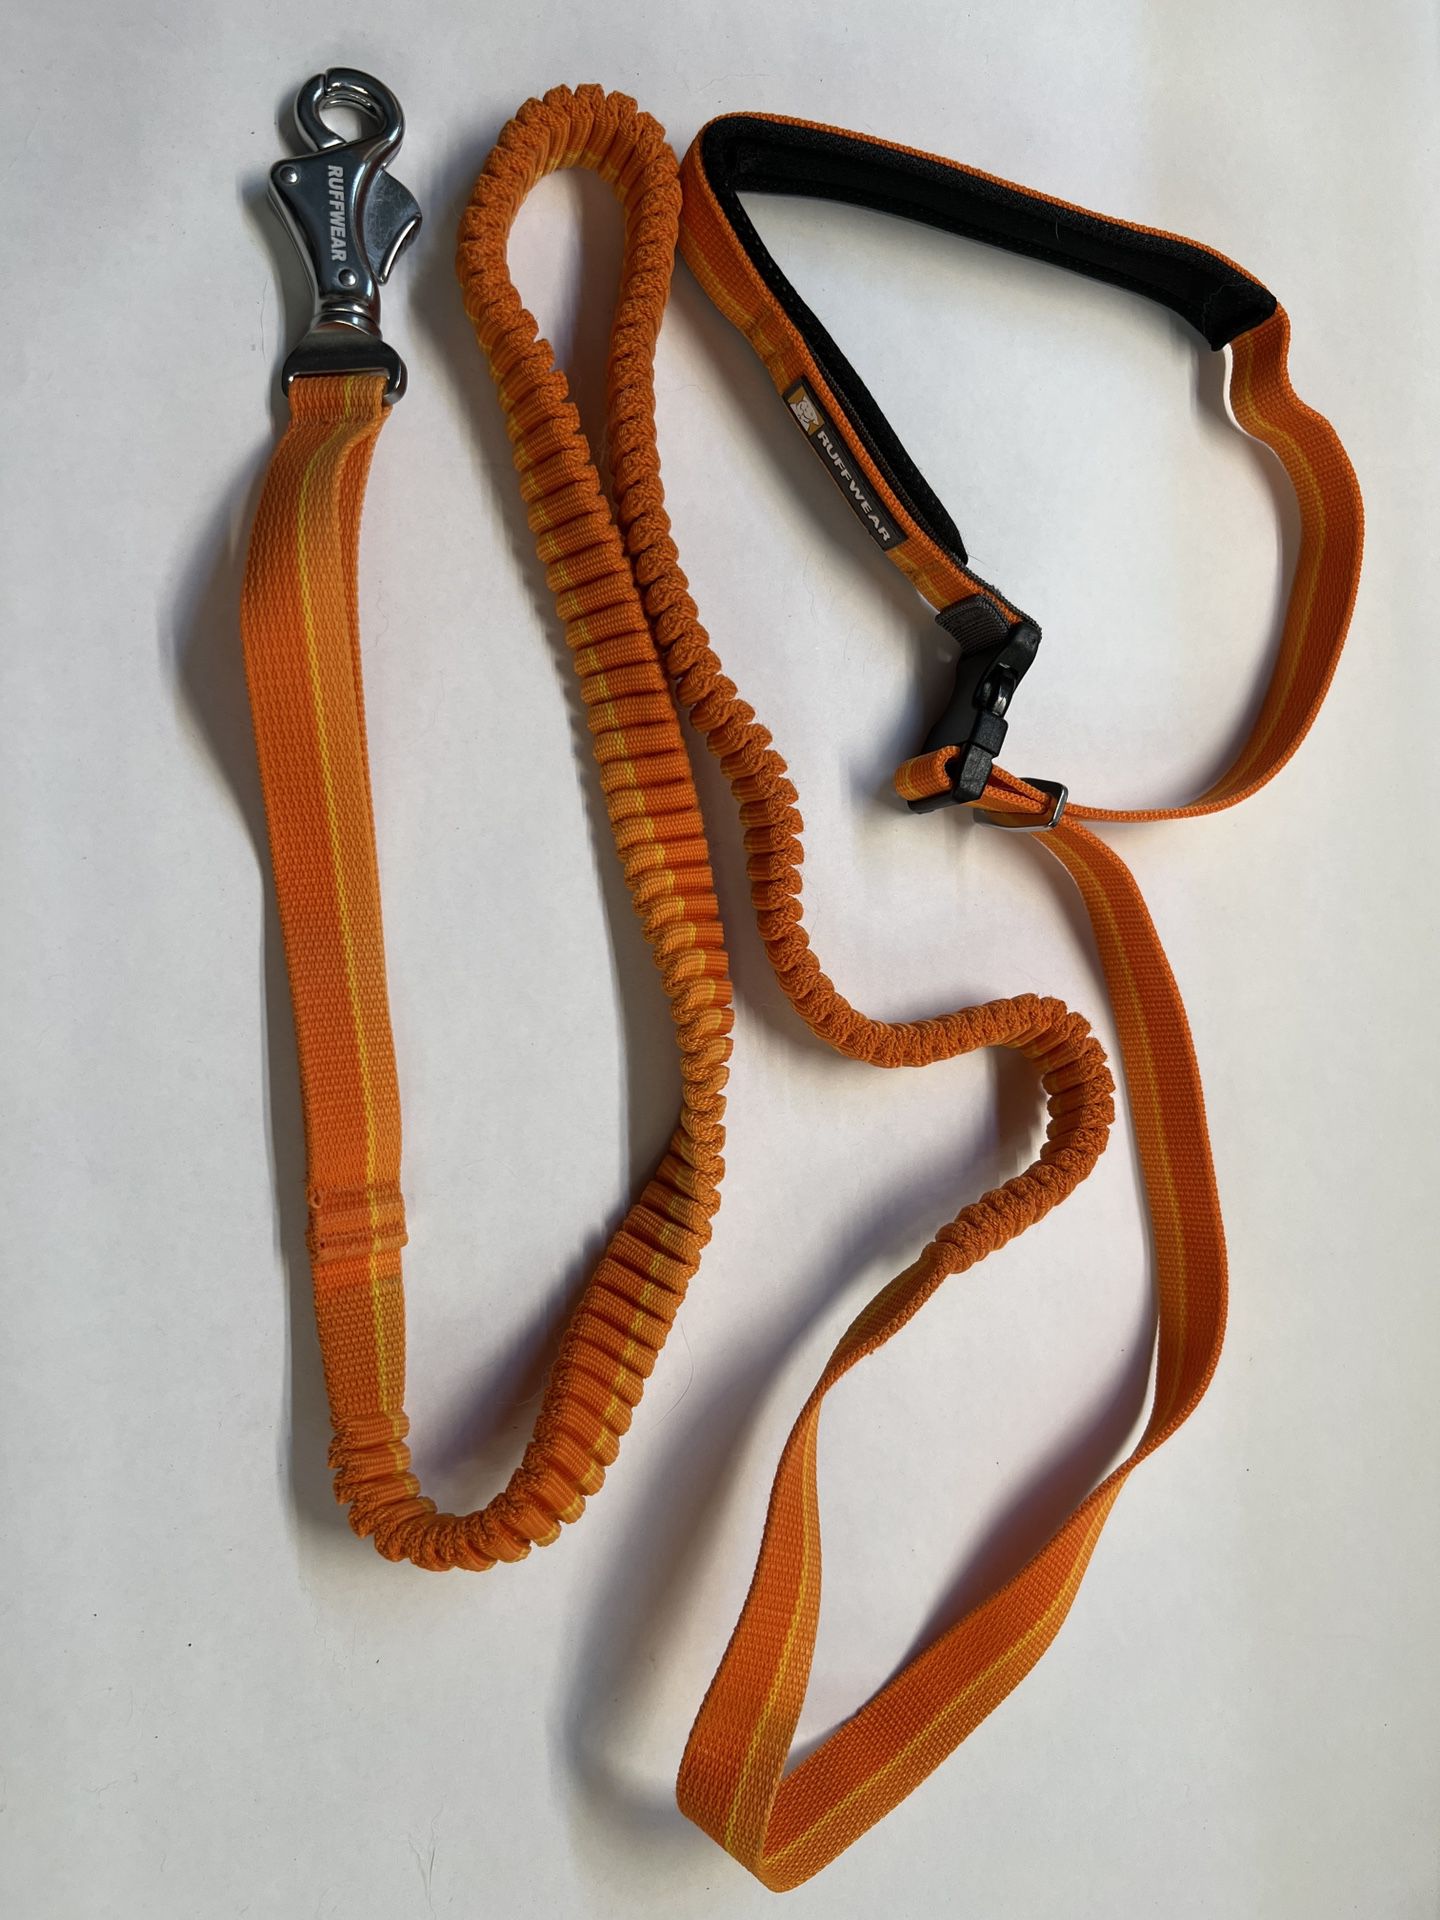 RUFFWEAR Roamer Bungee Dog Leash stretch webbing hands-free Orange 7-11 ft NEW